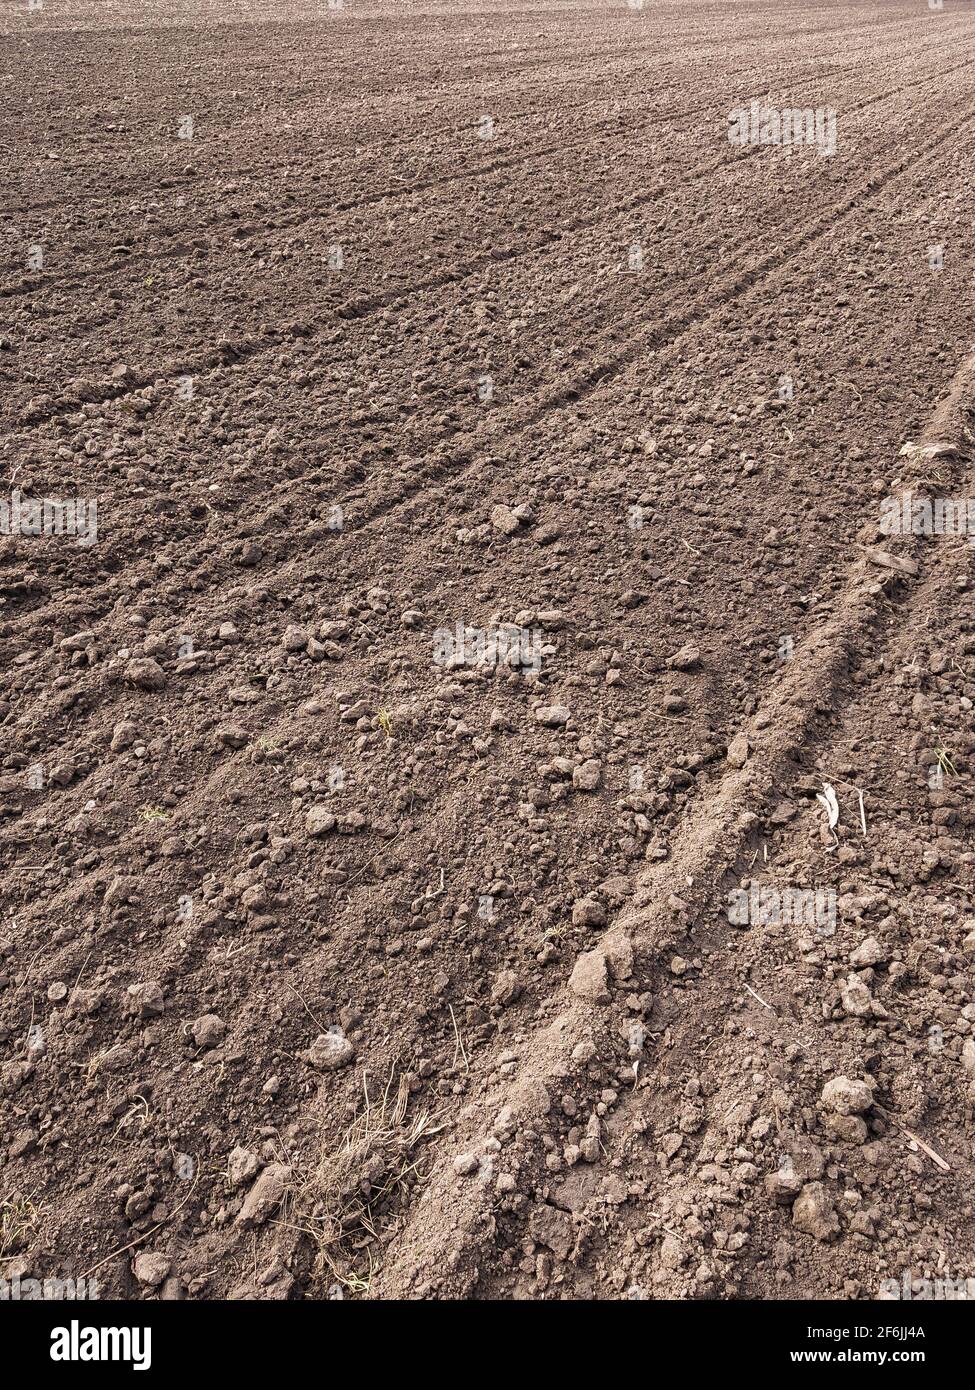 Ackerland. Vorbereitung des Feldes für die Pflanzung. Gepflügte Erde im Frühling. Landwirtschaftliche Arbeit. Stockfoto